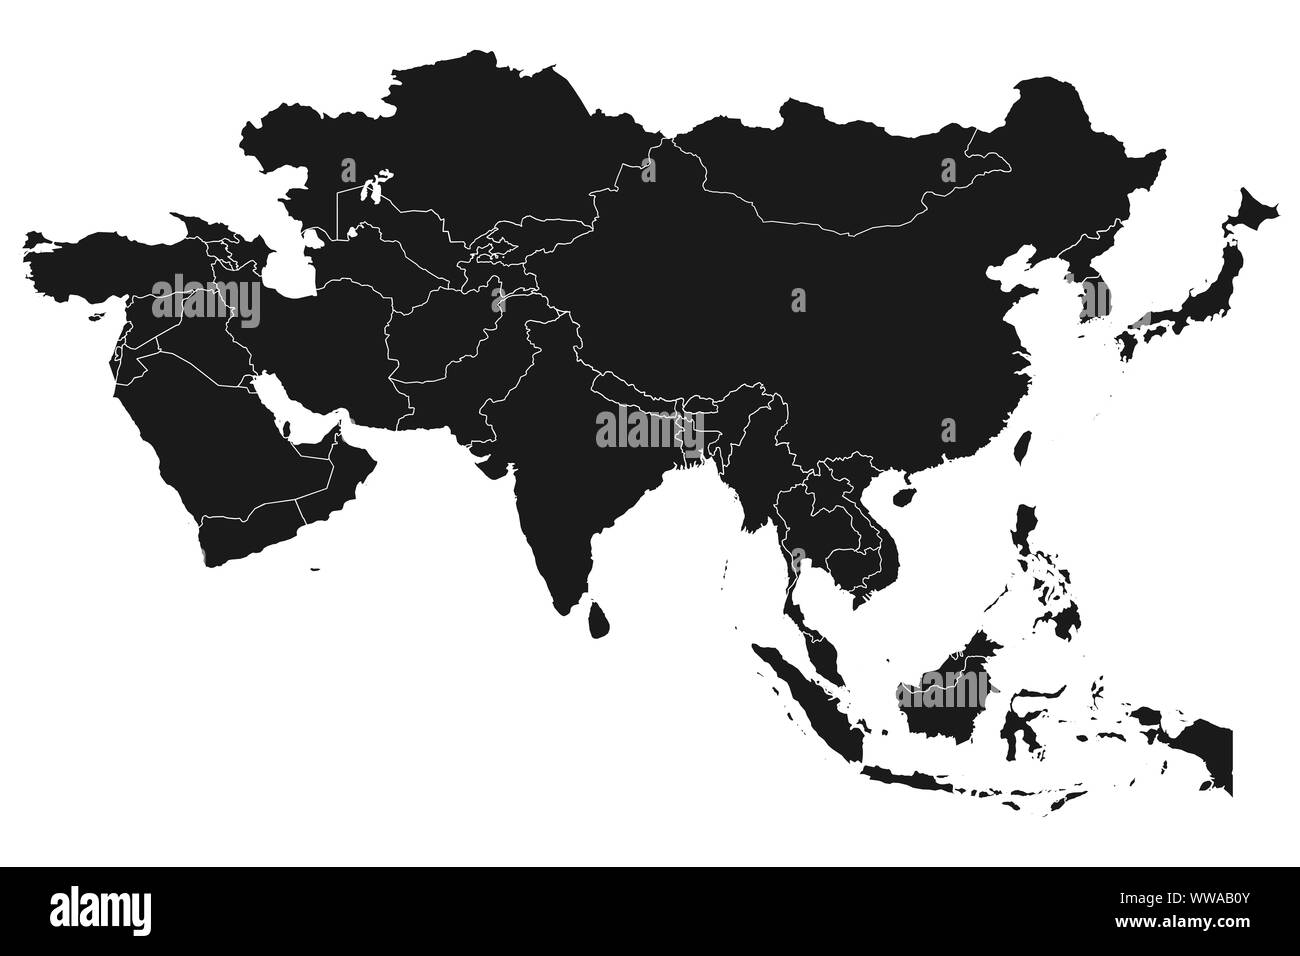 Carte de l'Asie avec contours vector illustration illustration vectorielle sur fond blanc - Asie Banque D'Images